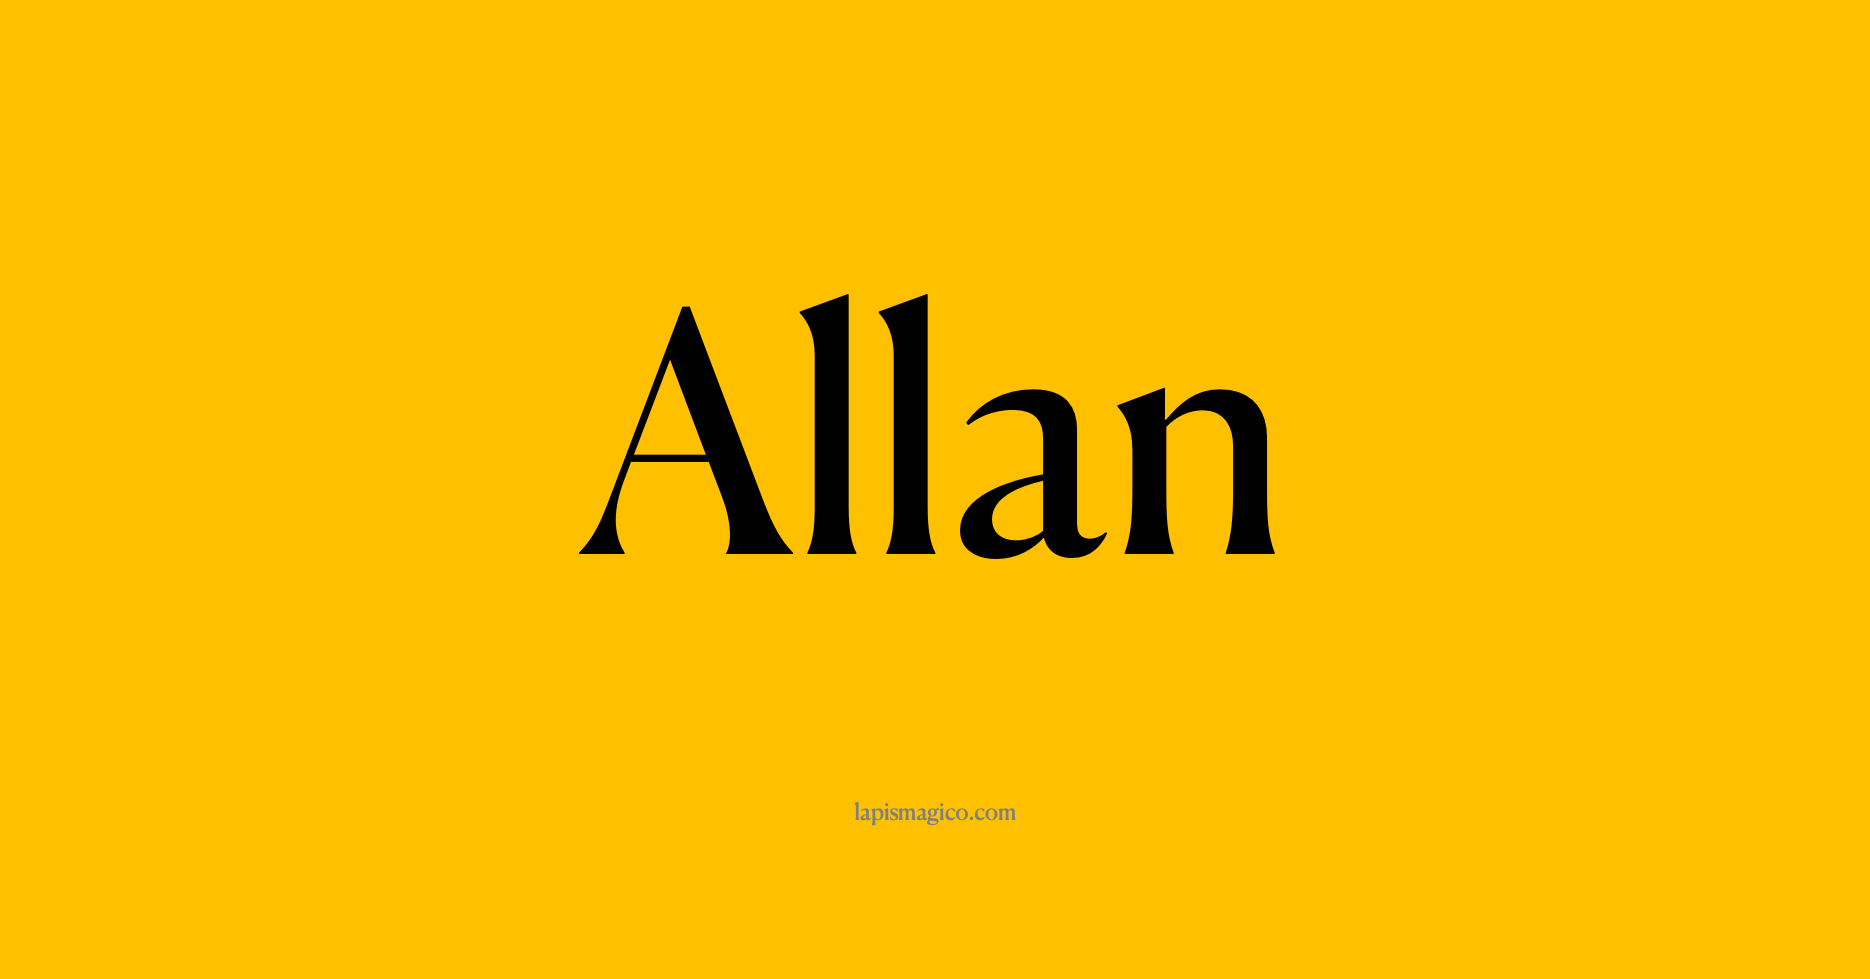 Nome Allan